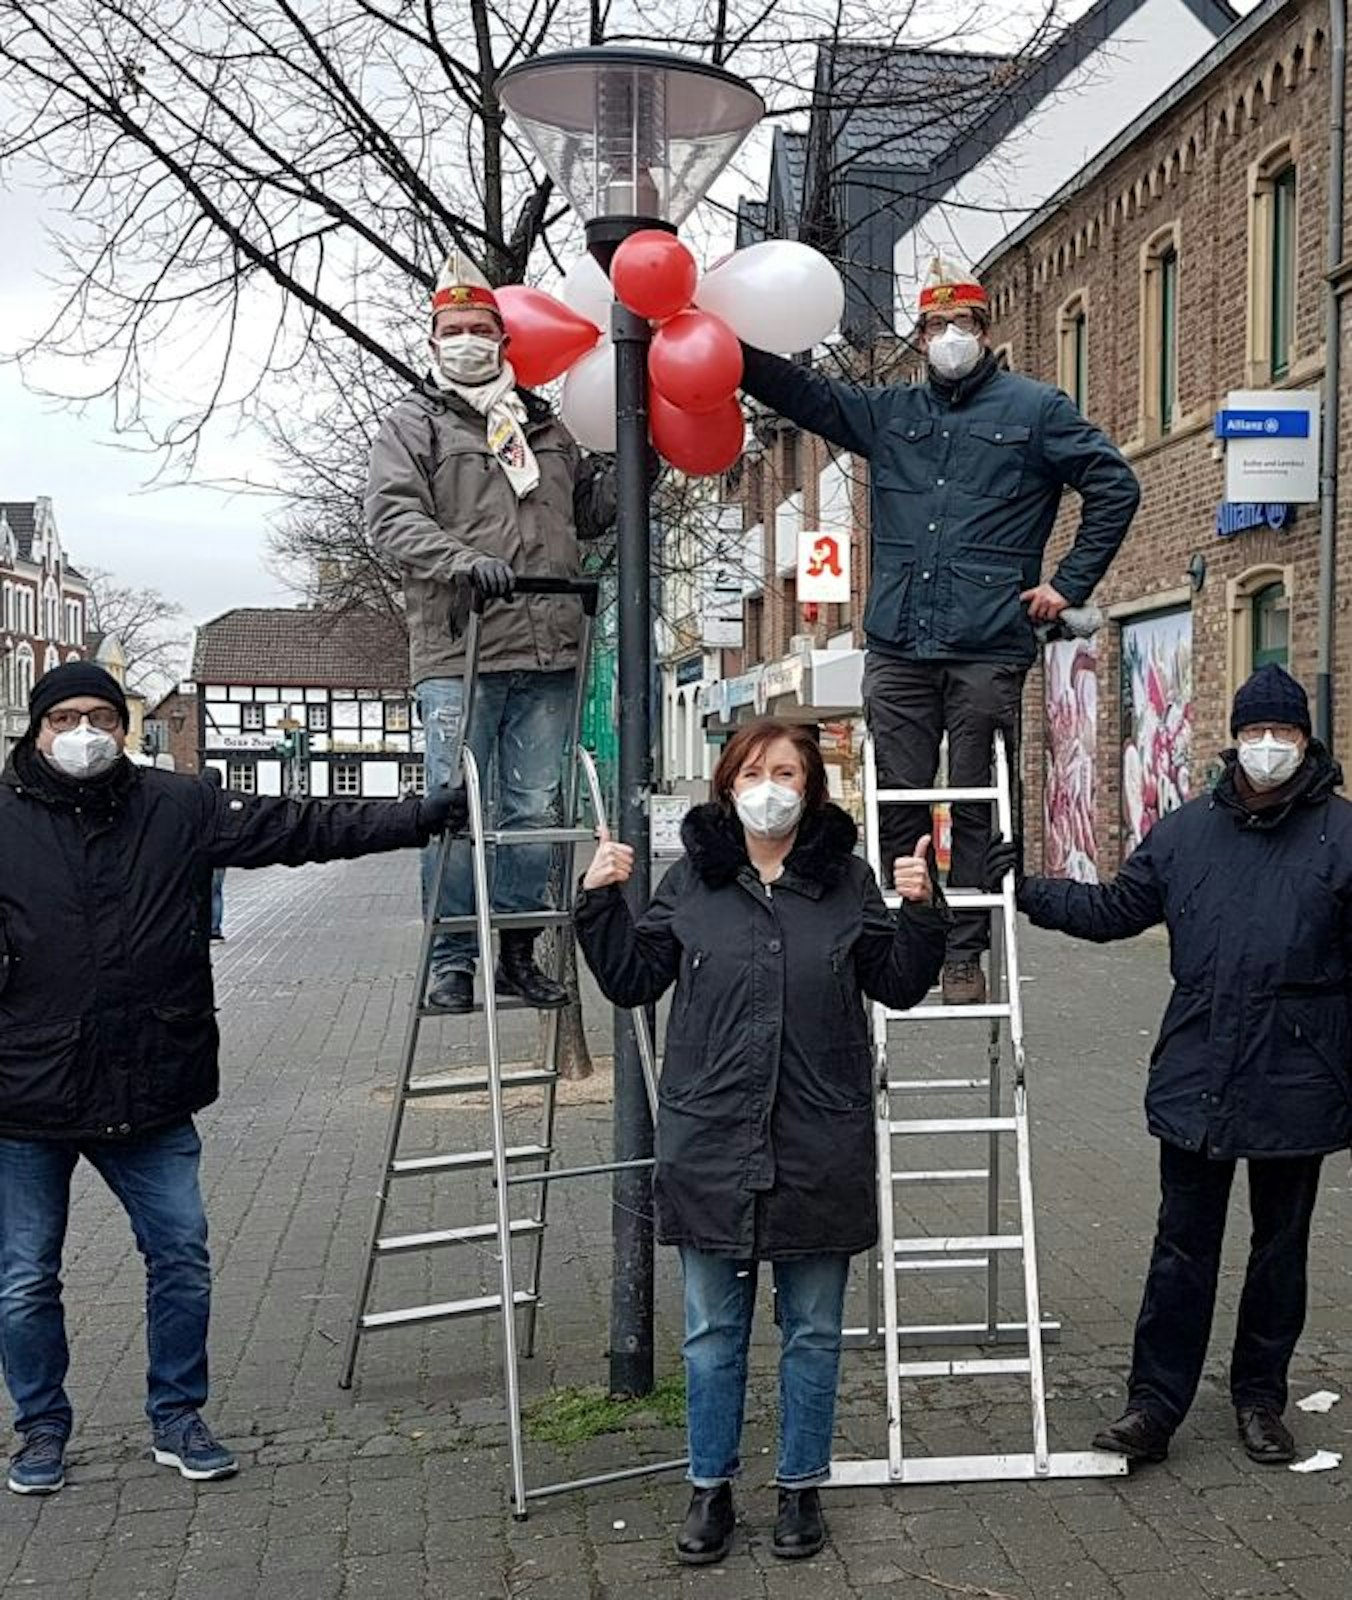 Auf dem Markt in Lechenich befestigten Gardisten Luftballons.